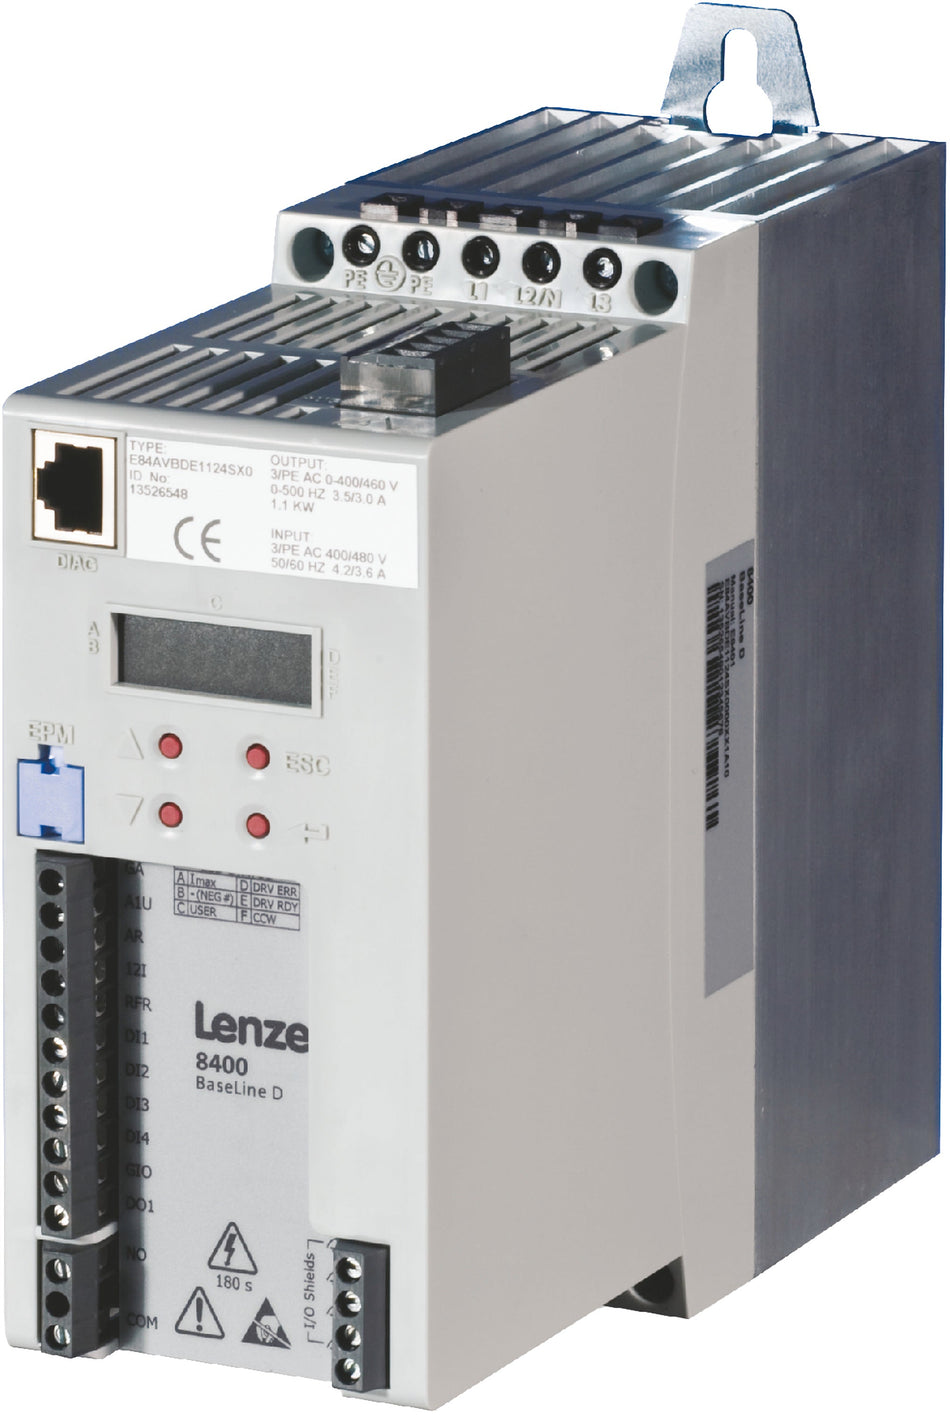 Lenze Inverter Drives 8400 BaseLine -  E84AVBDE1122SX0 1.1 kW